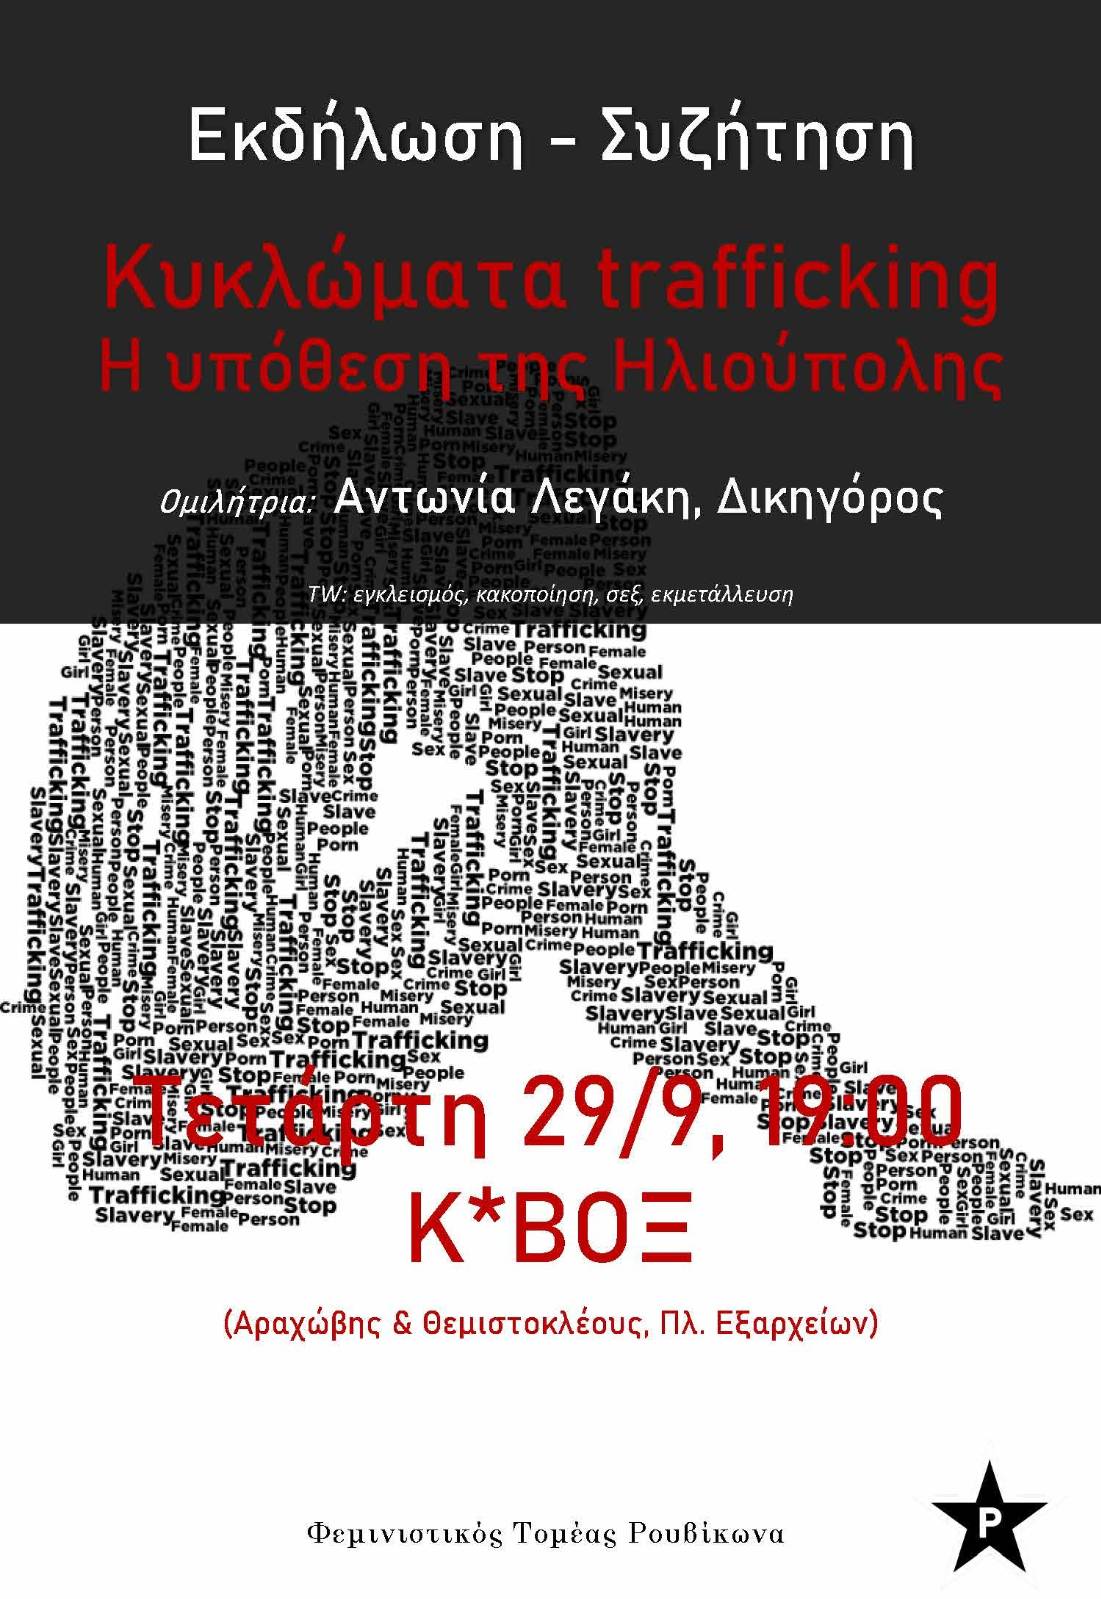 Εκδήλωση-συζήτηση Κυκλώματα trafficking στο Κ*ΒΟΞ